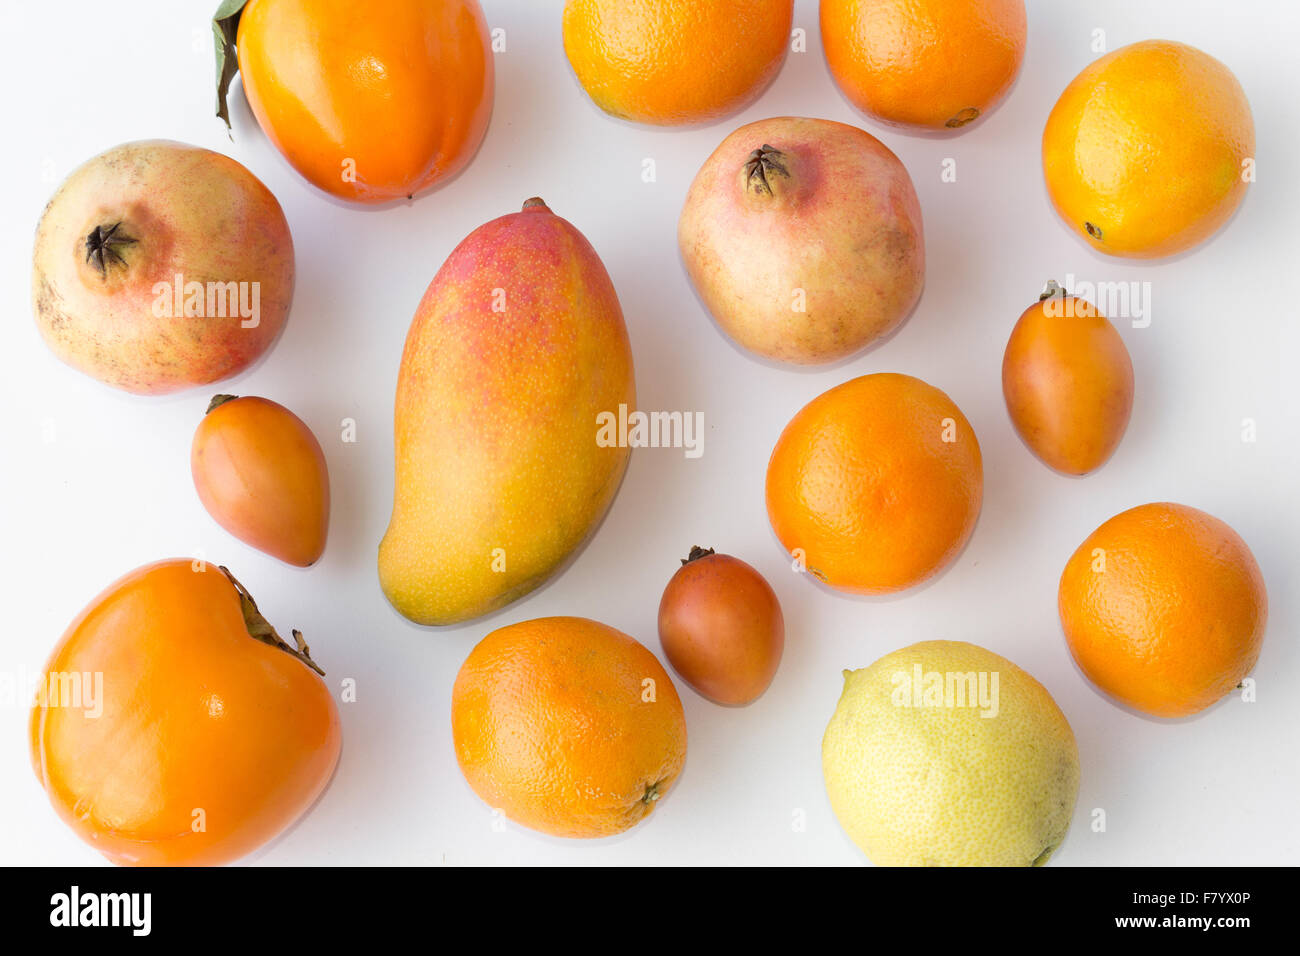 Viele frische orange Früchte auf weißem Hintergrund - Orangen, Zitrone, Mango, kaki Stockfoto